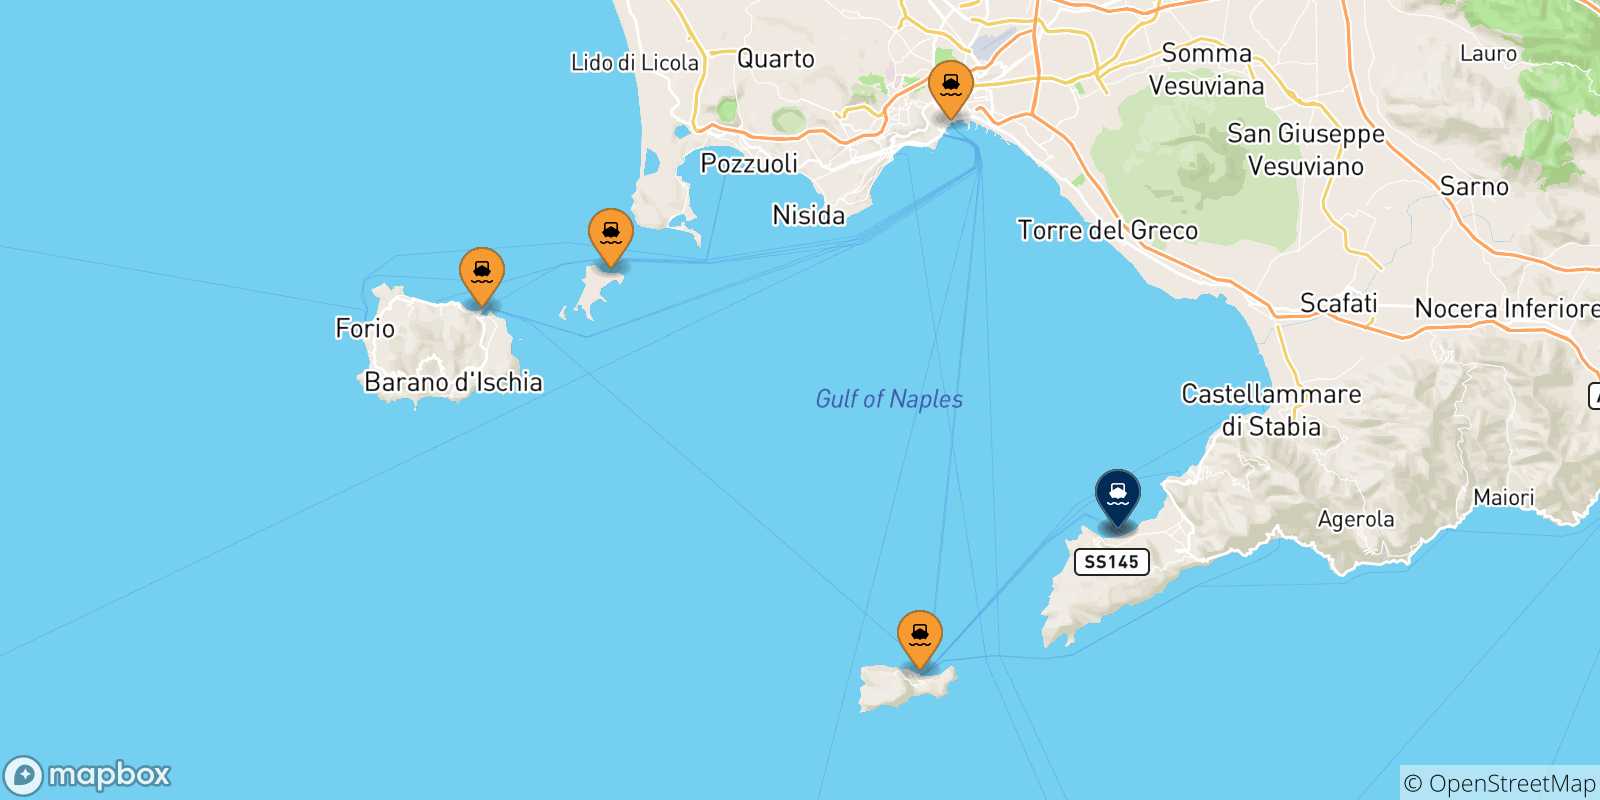 Carte des traversées possibles entre l'Italie et Sorrente